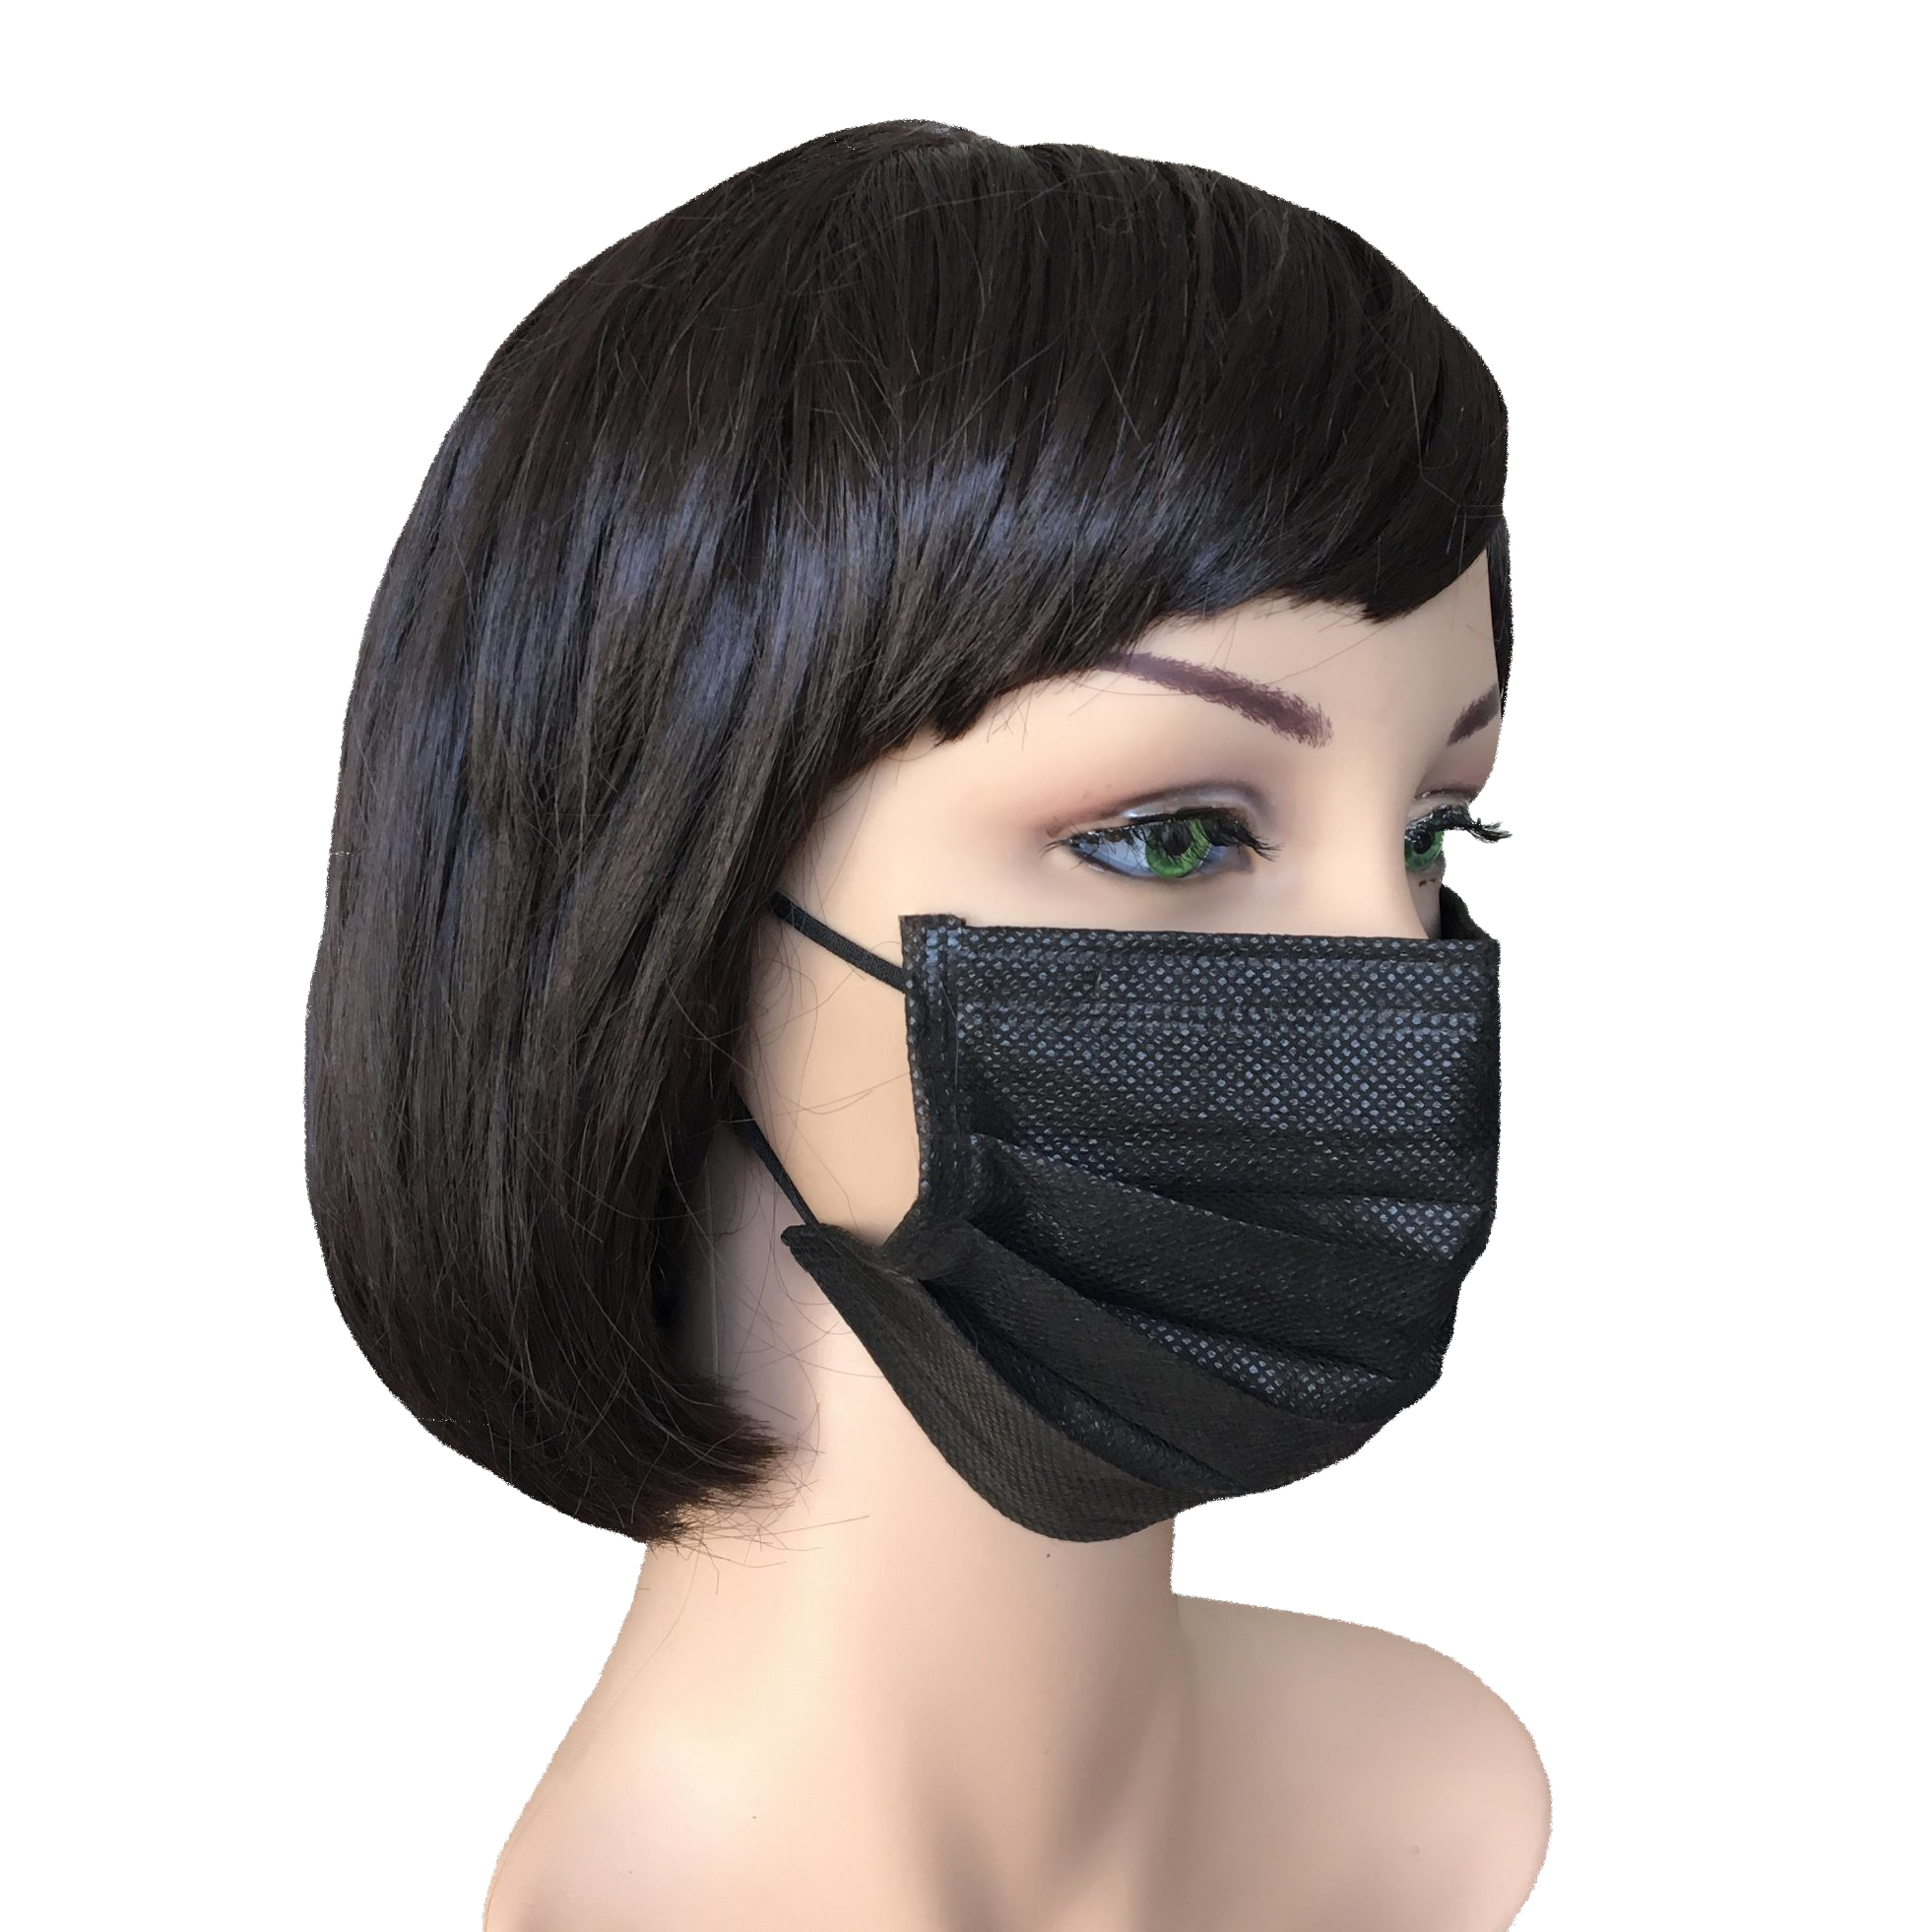 Black Medical Face Mask Free PNG Image